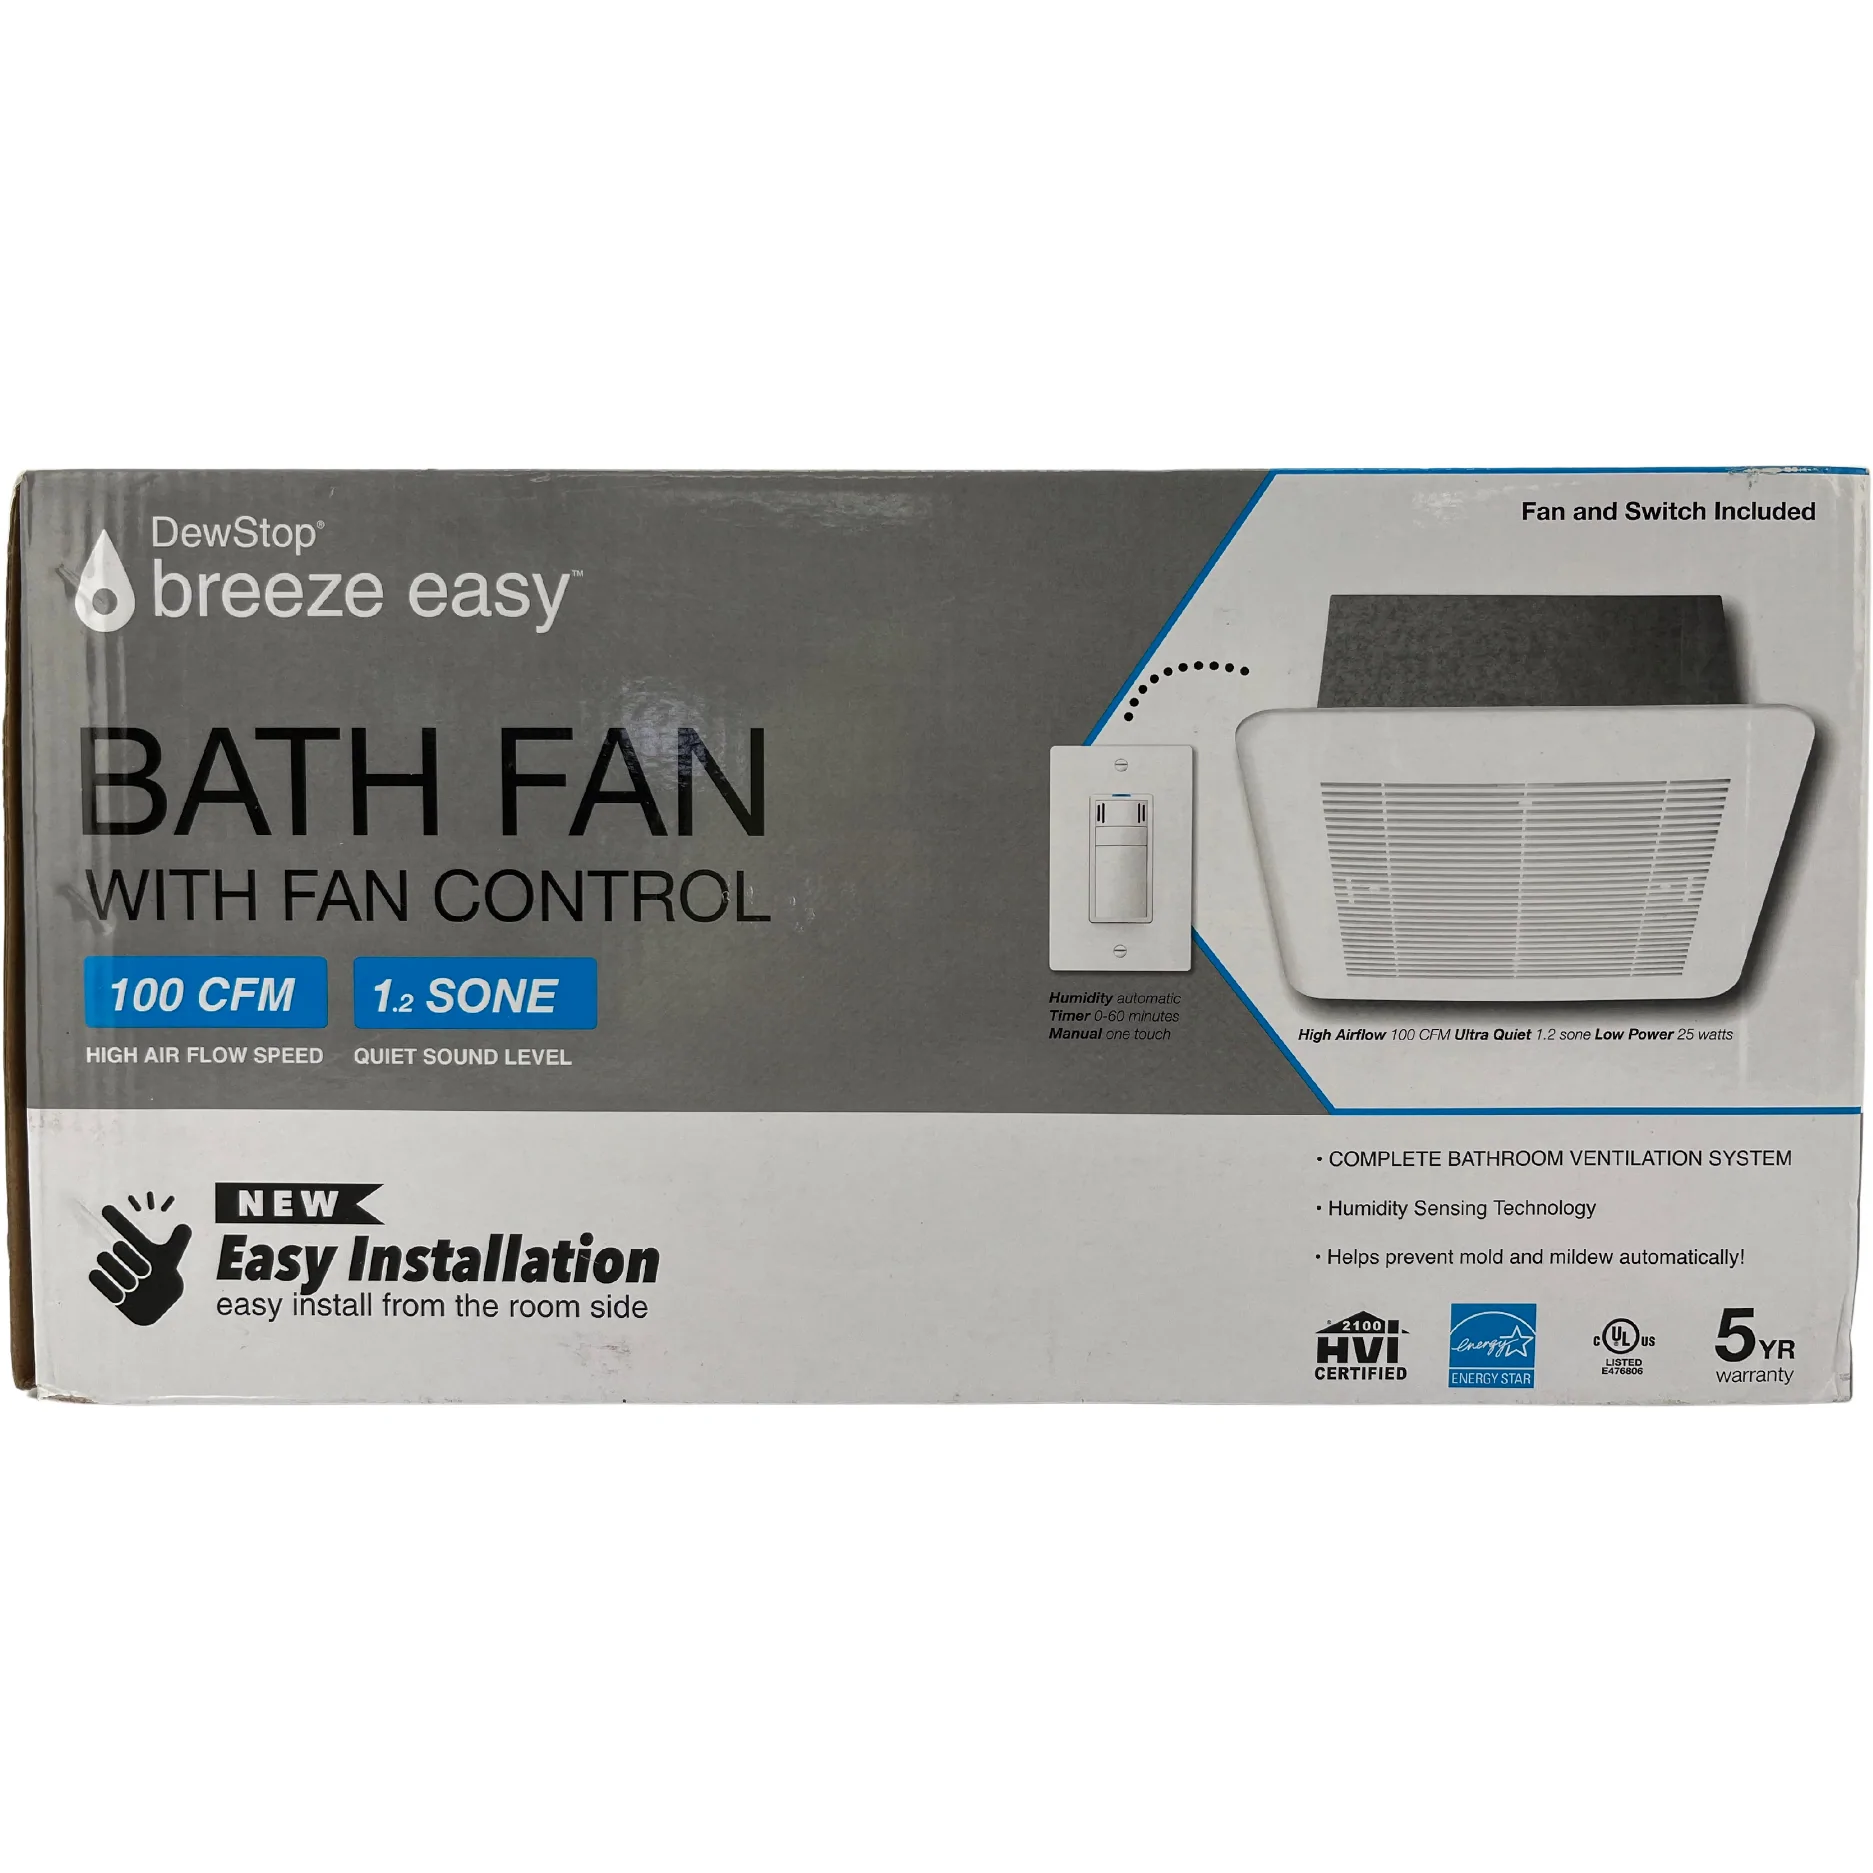 DewStop Breeze Easy Bath Fan: Bathroom Ventilation System